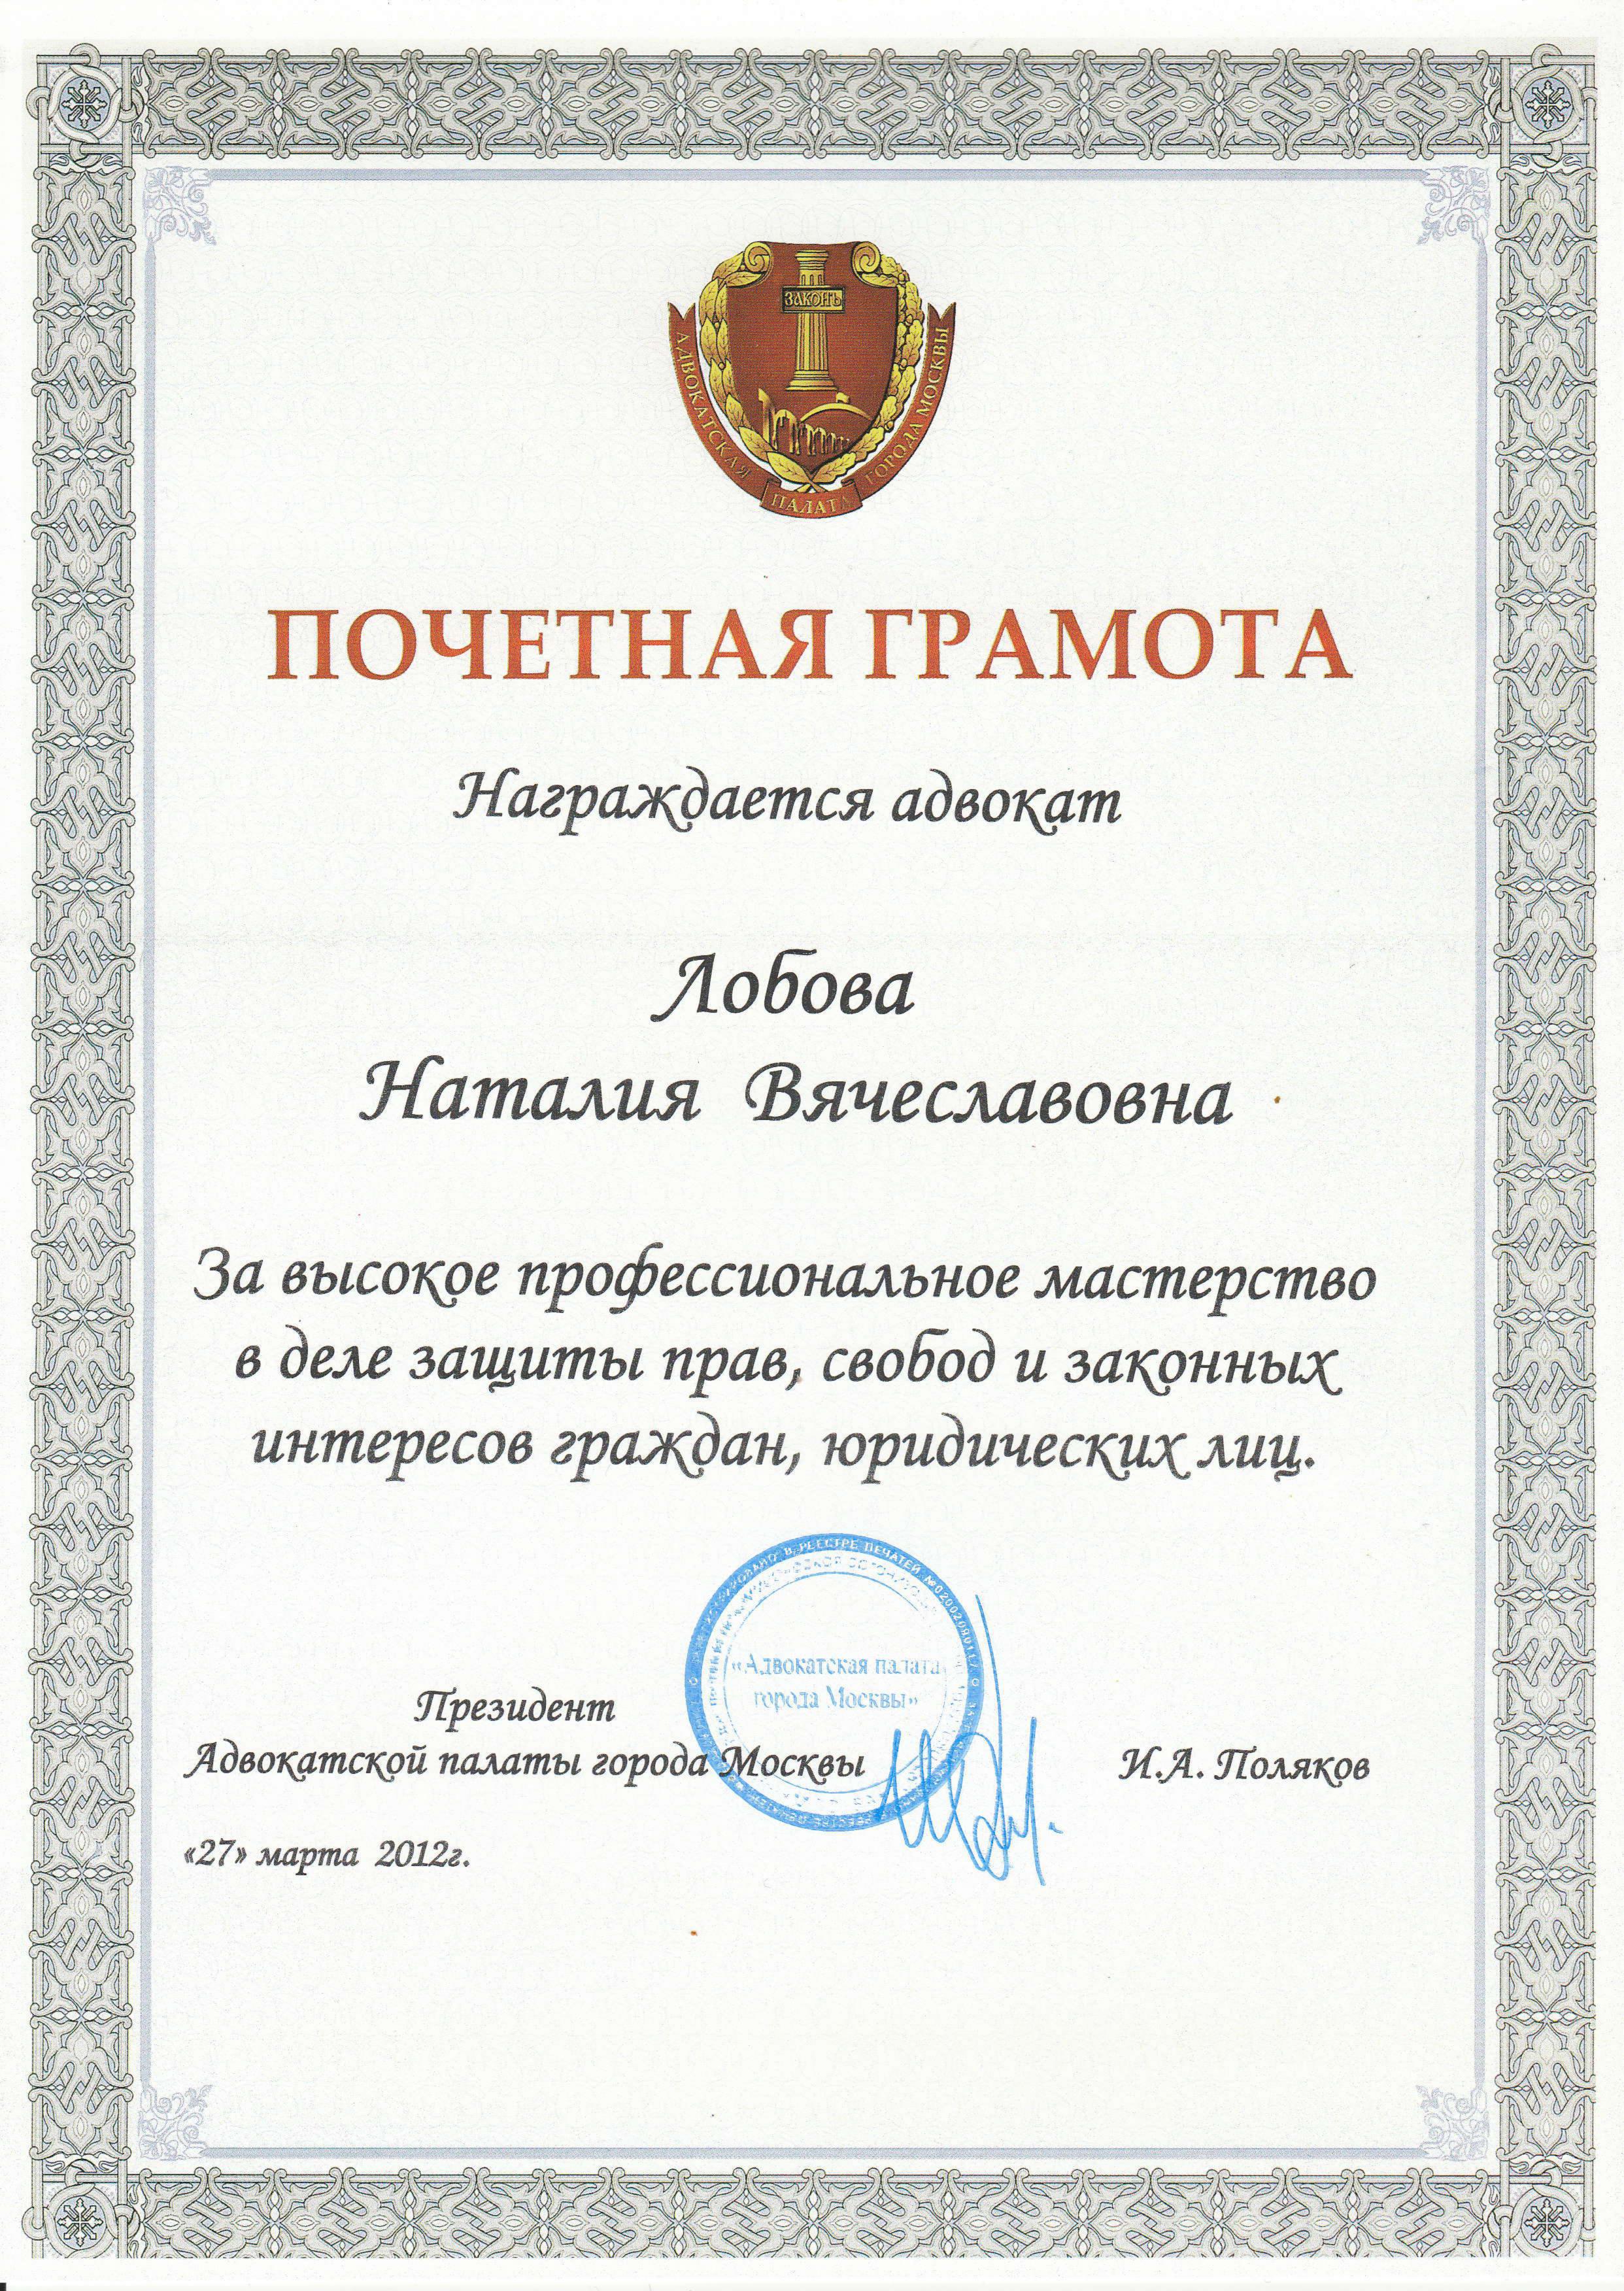 Почетная грамота - 2012